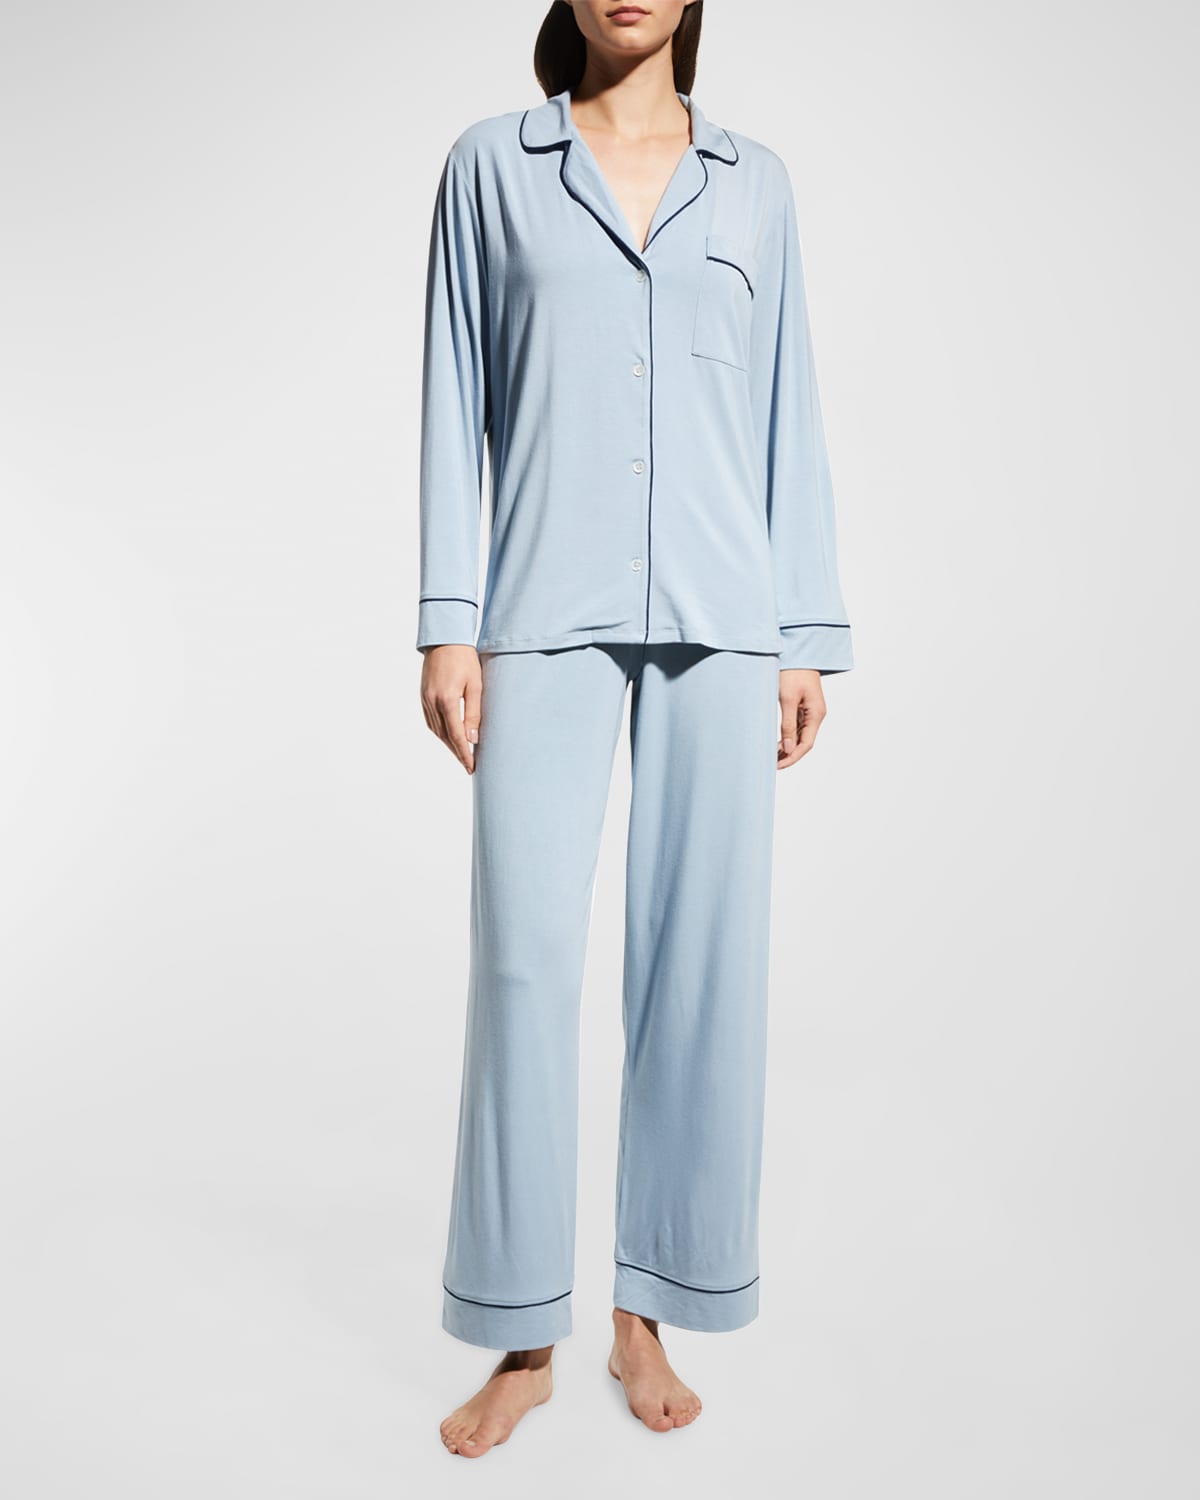 Eberjey Gisele Long Pajama Set In Ivory/navy